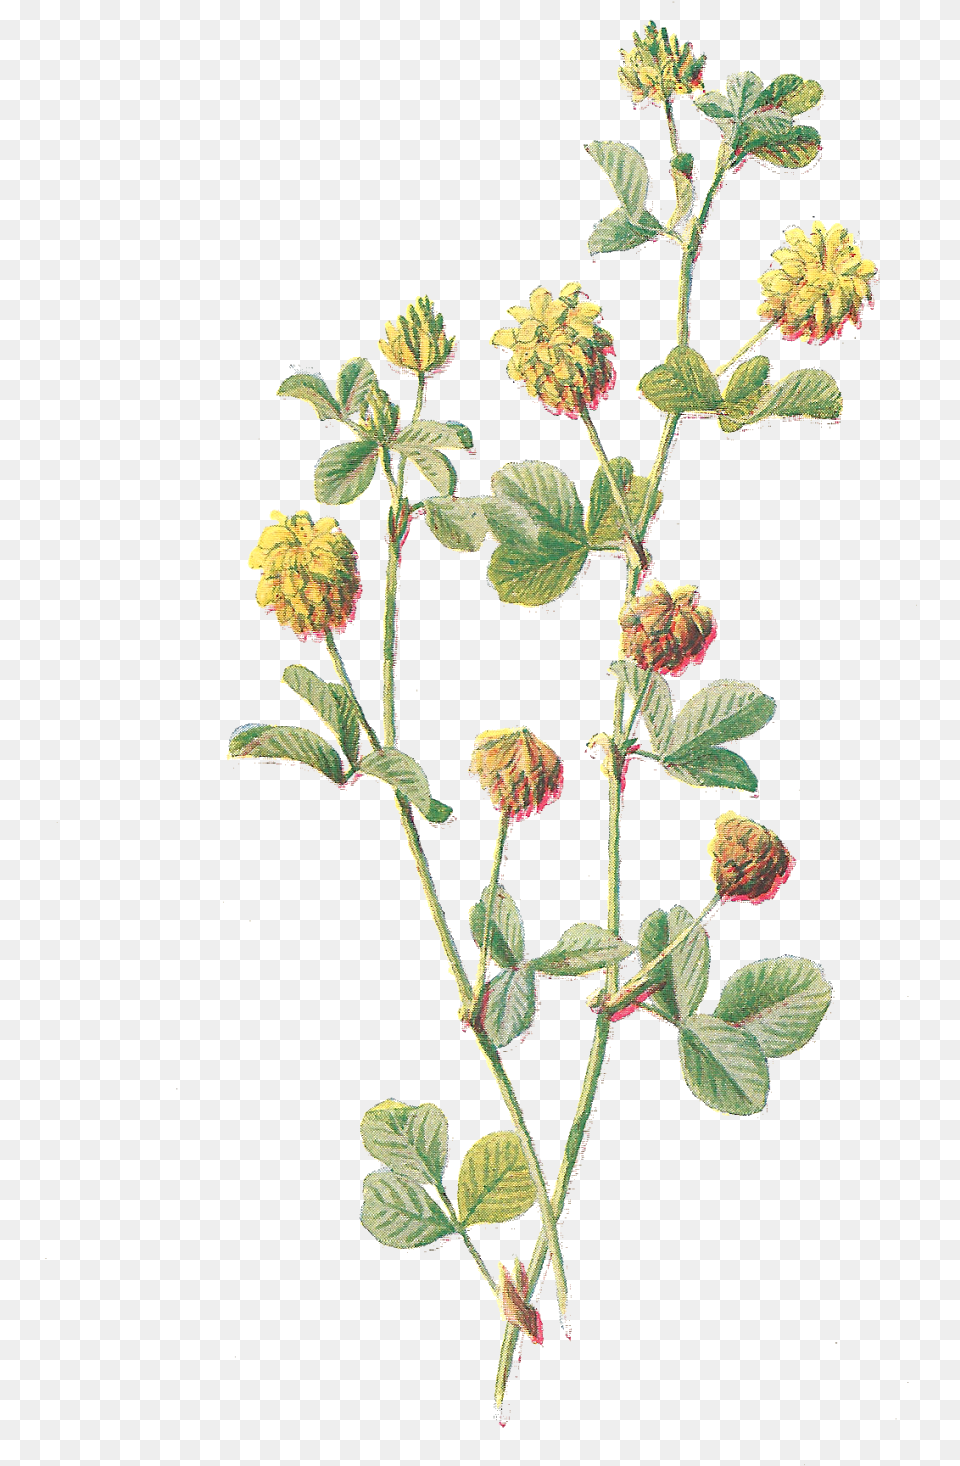 Botanical Flower Drawings, Grass, Herbal, Herbs, Leaf Png Image